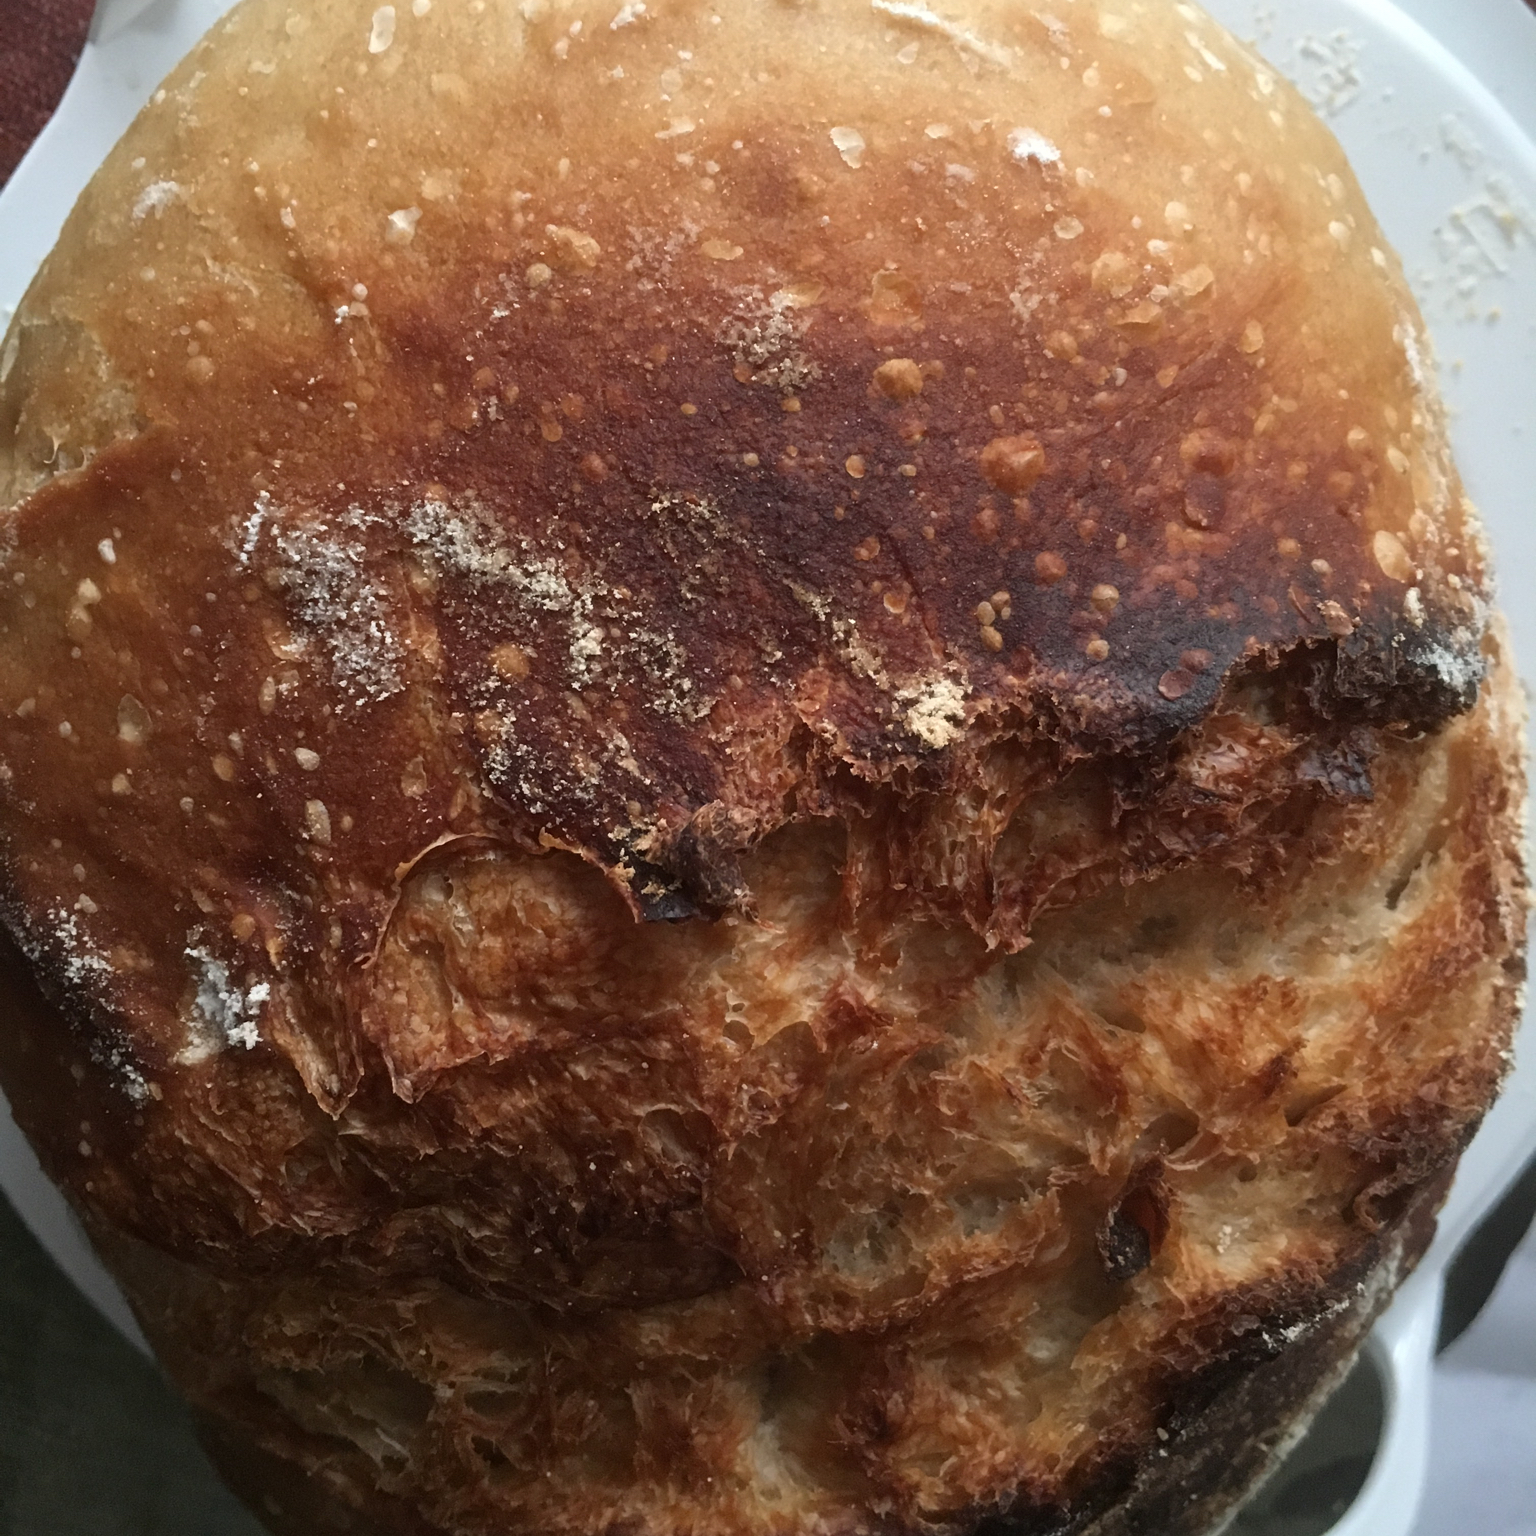 【Ken Forkish】双次喂养天然酵种淡酸味欧包 Double-fed sweet levain bread